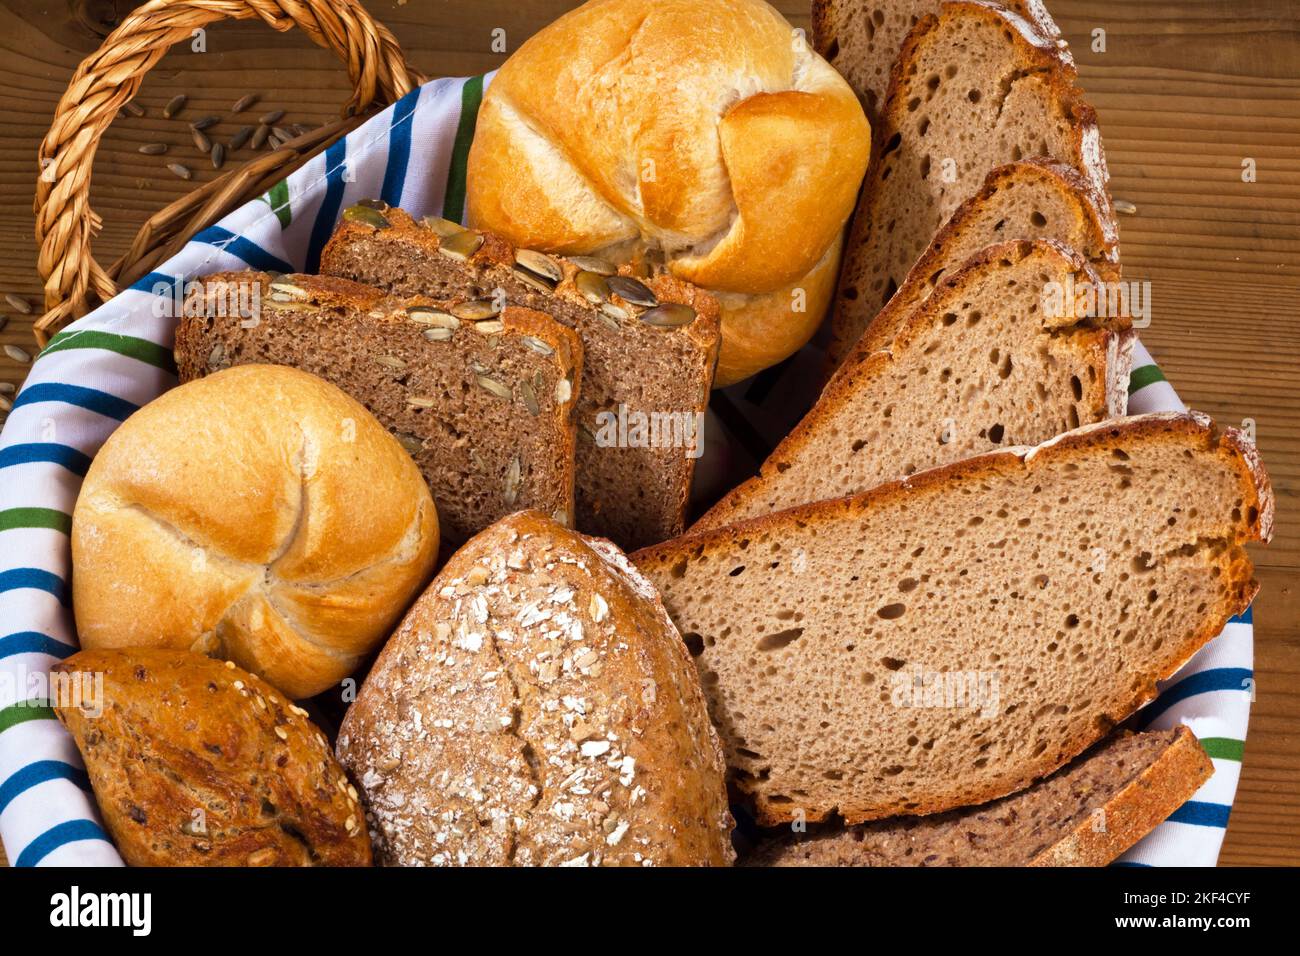 Ein Korb mit verschiedene Sorten Brot und Brötchen. Gesunde Ernährung durch frische Backwaren. Stock Photo